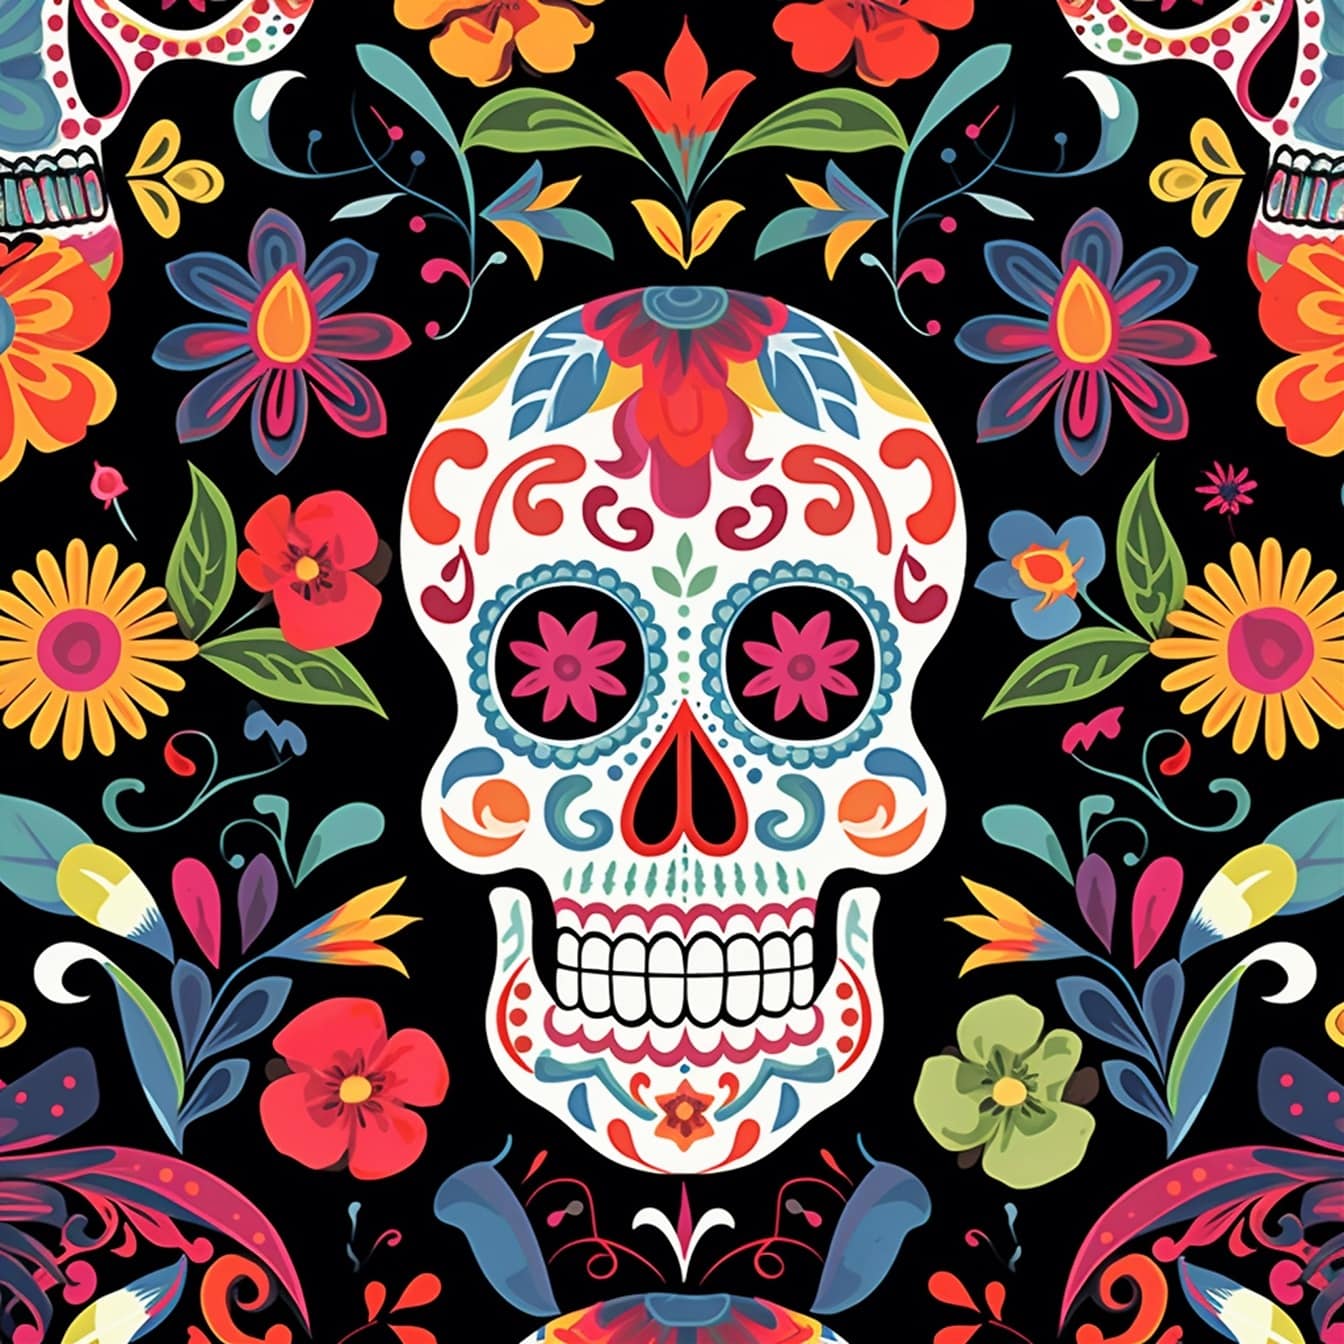 Ilustración ornamental de calavera vintage de estilo libre mexicano